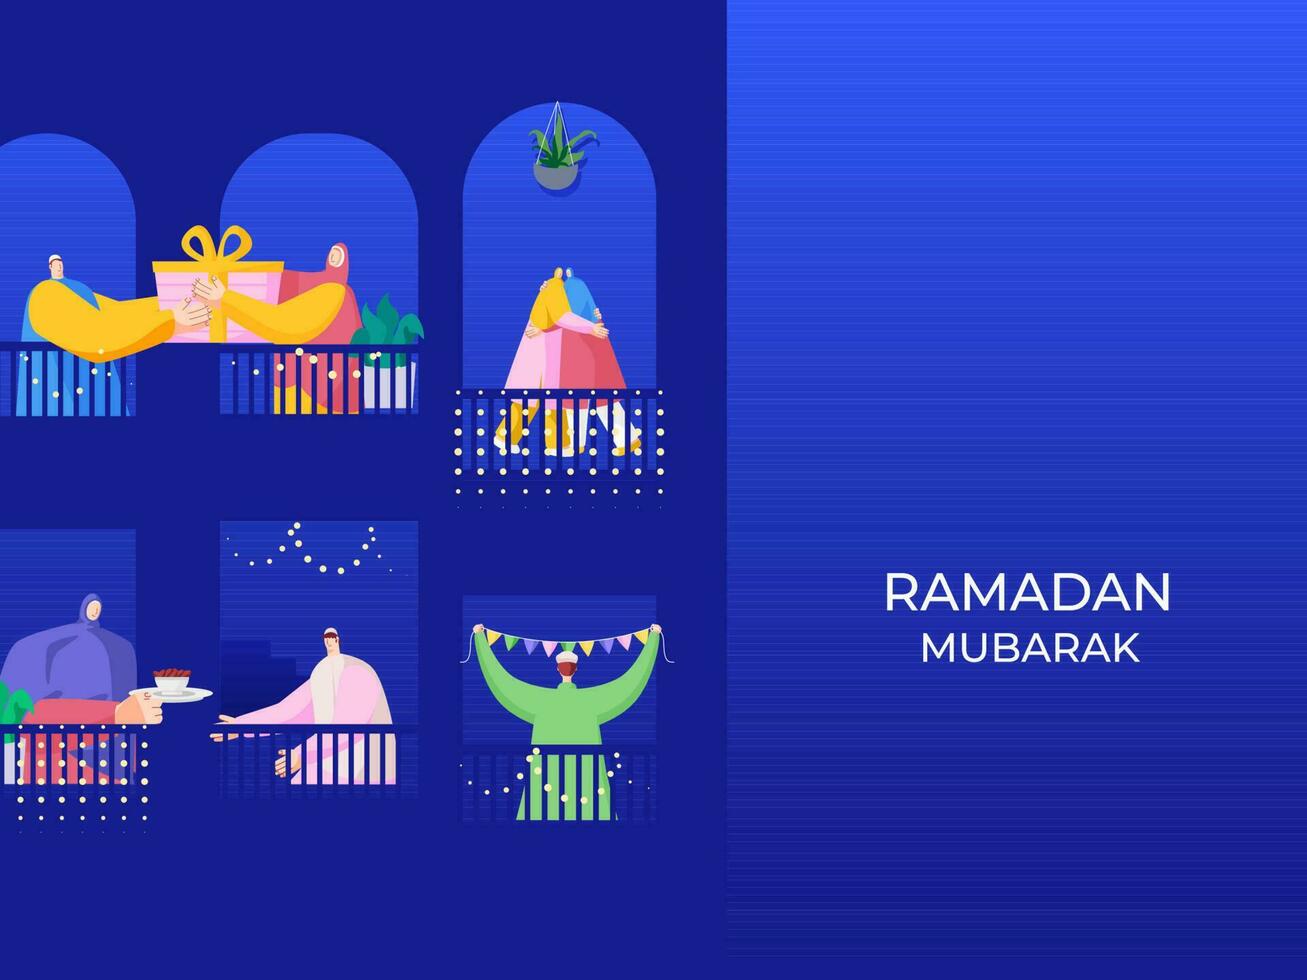 islâmico pessoas comemoro e apreciar com cada de outros às seus sacada em a ocasião do Ramadã mubarak. vetor